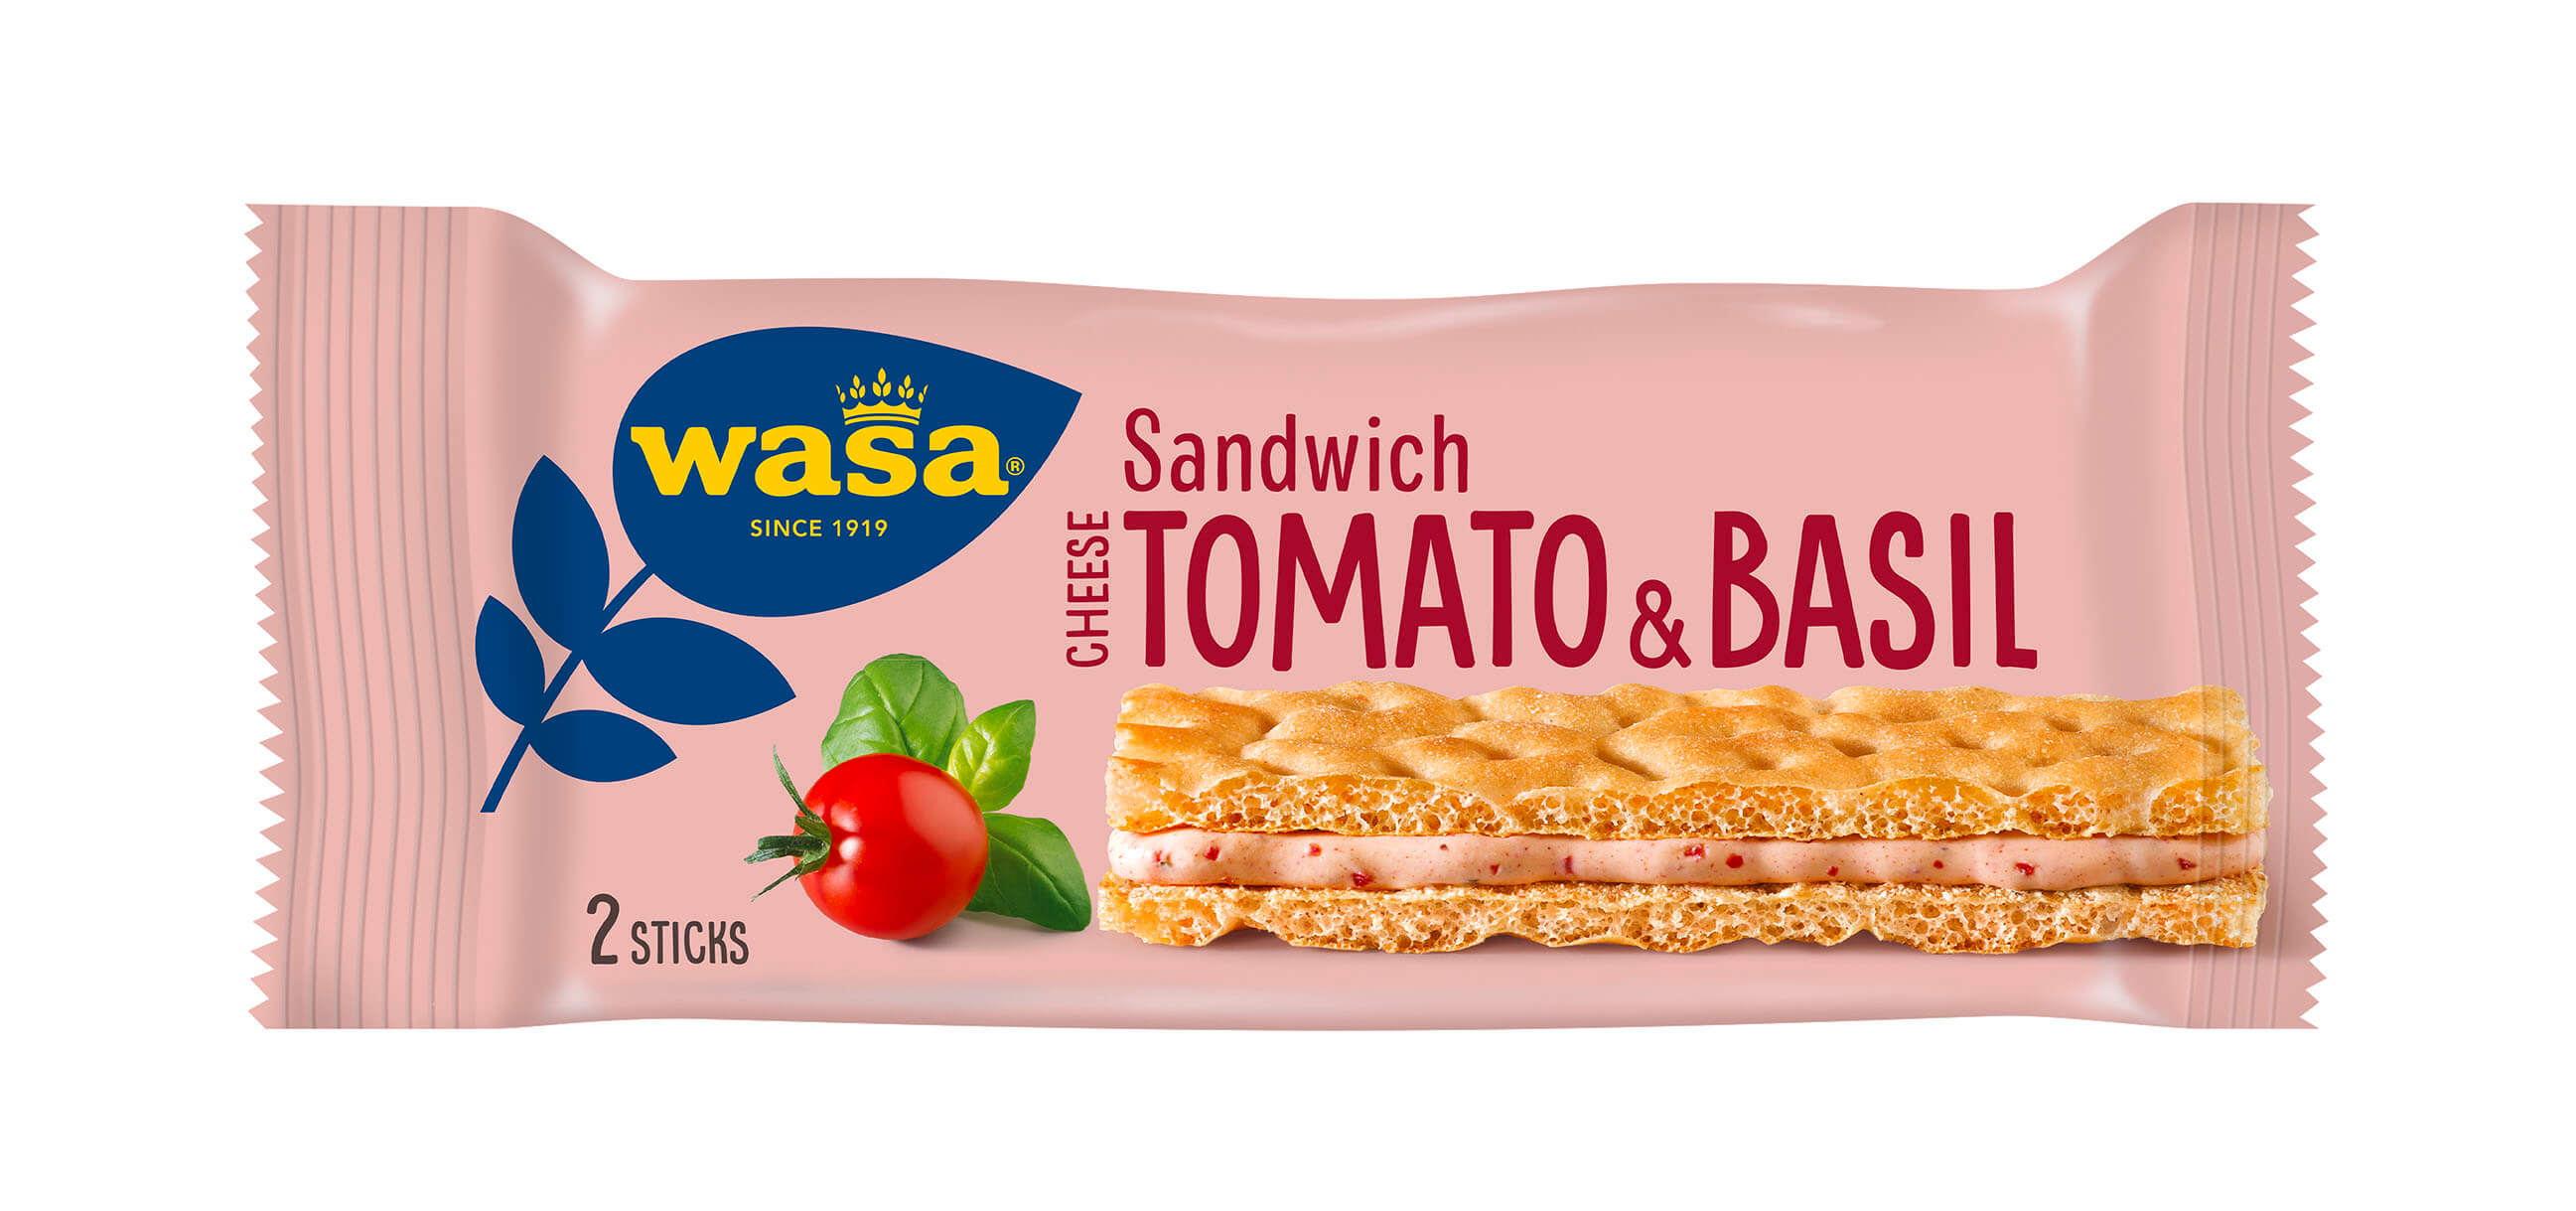 Sandwich Cheese Tomato & Basil - Upptäck det perfekta mellanmålet, gott knäckebröd med krämig ostfyllning. Utmärkt som ett lätt mellanmål på språng